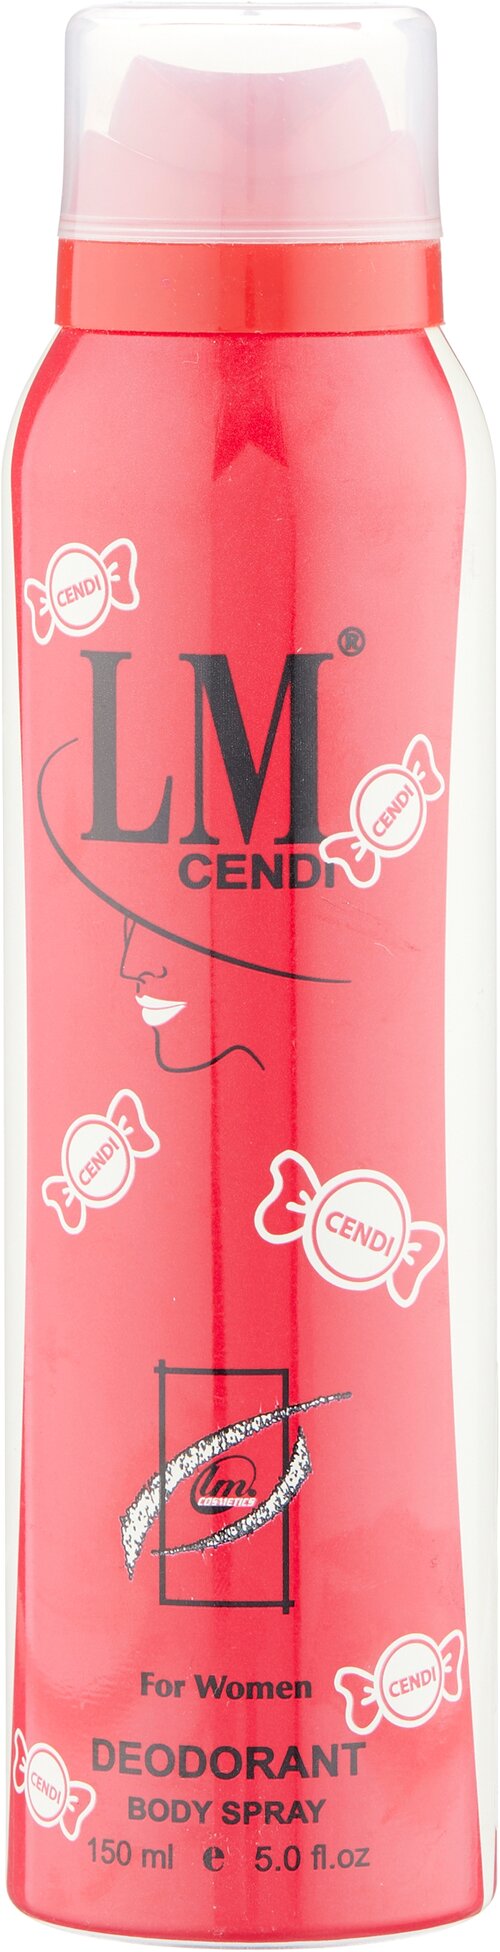 Парфюмированный дезодорант LM Cosmetics Cendi for women 150 ml